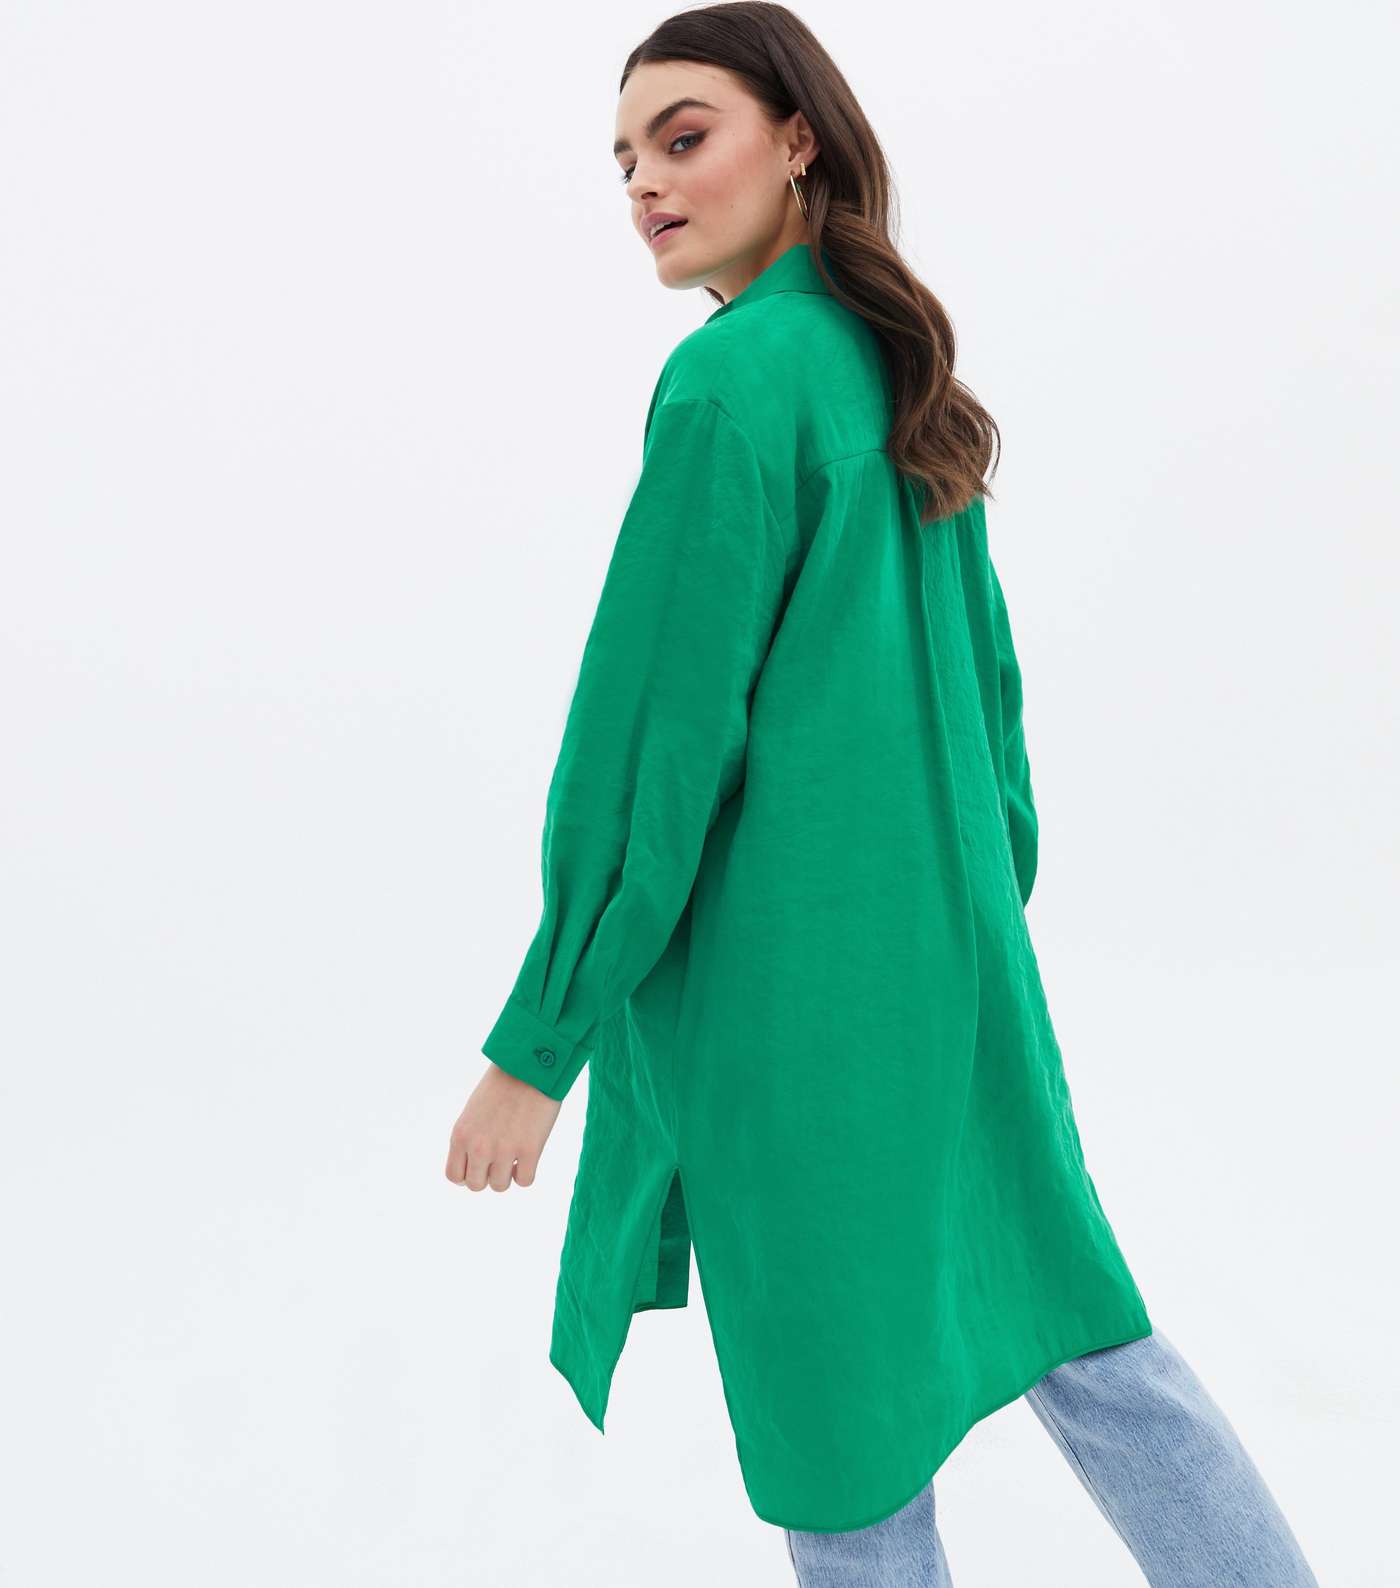 Green Long Sleeve Oversized Shirt Image 4